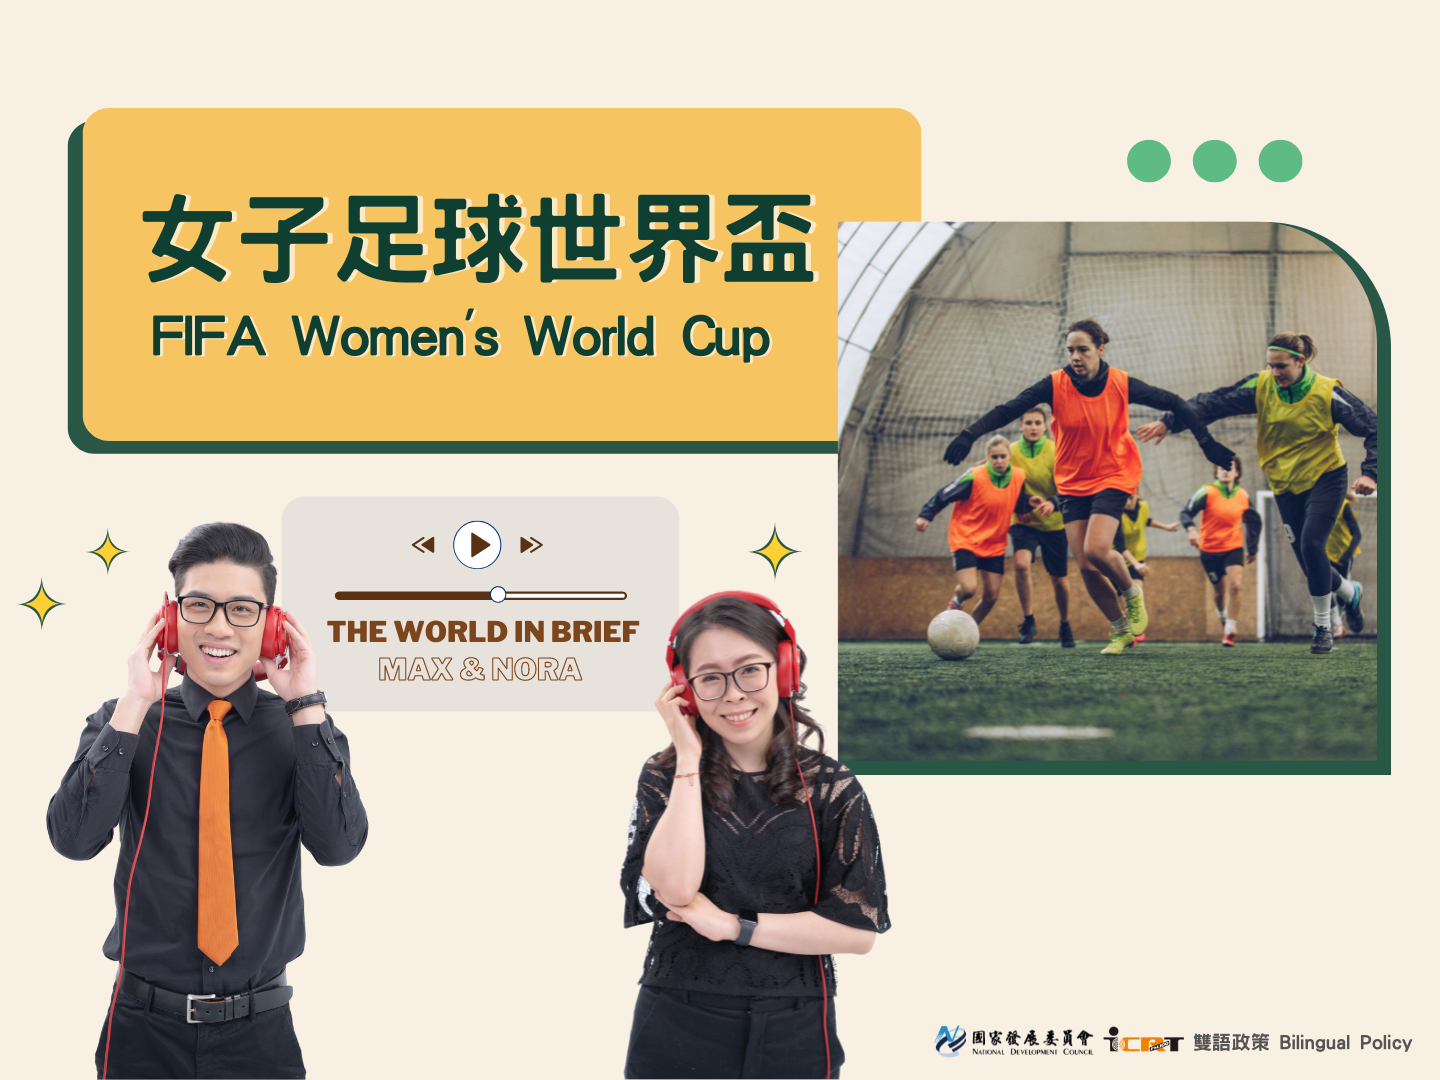 3分鐘時事英語廣播 女子足球世界盃：於伊甸公園揭幕、雪梨決戰的女子足球界最高榮譽賽事